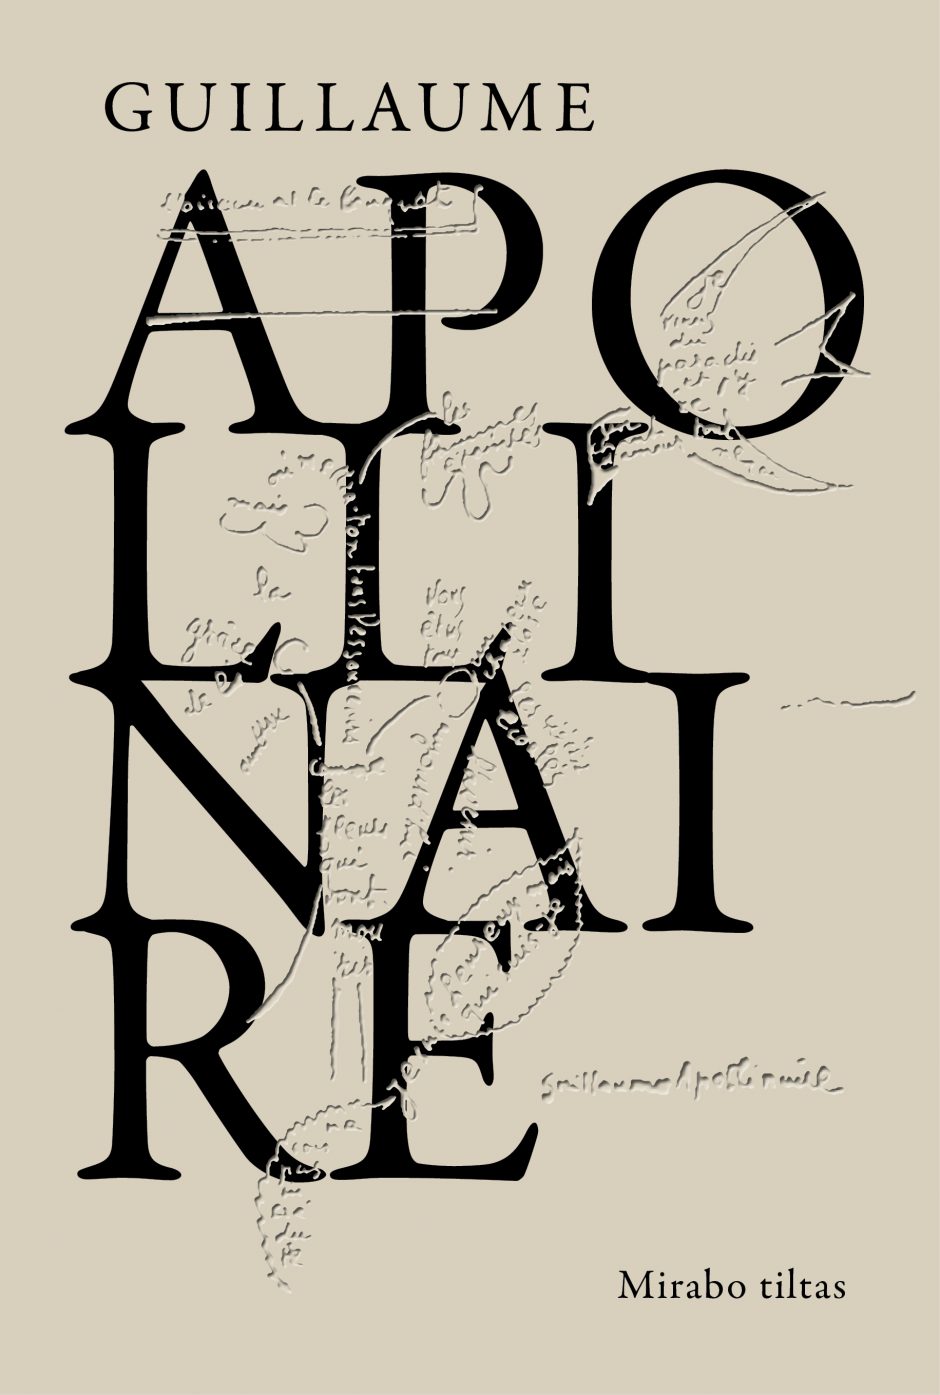 Legendinio G. Apollinaire poezija: naujumo esmė – nuostaba